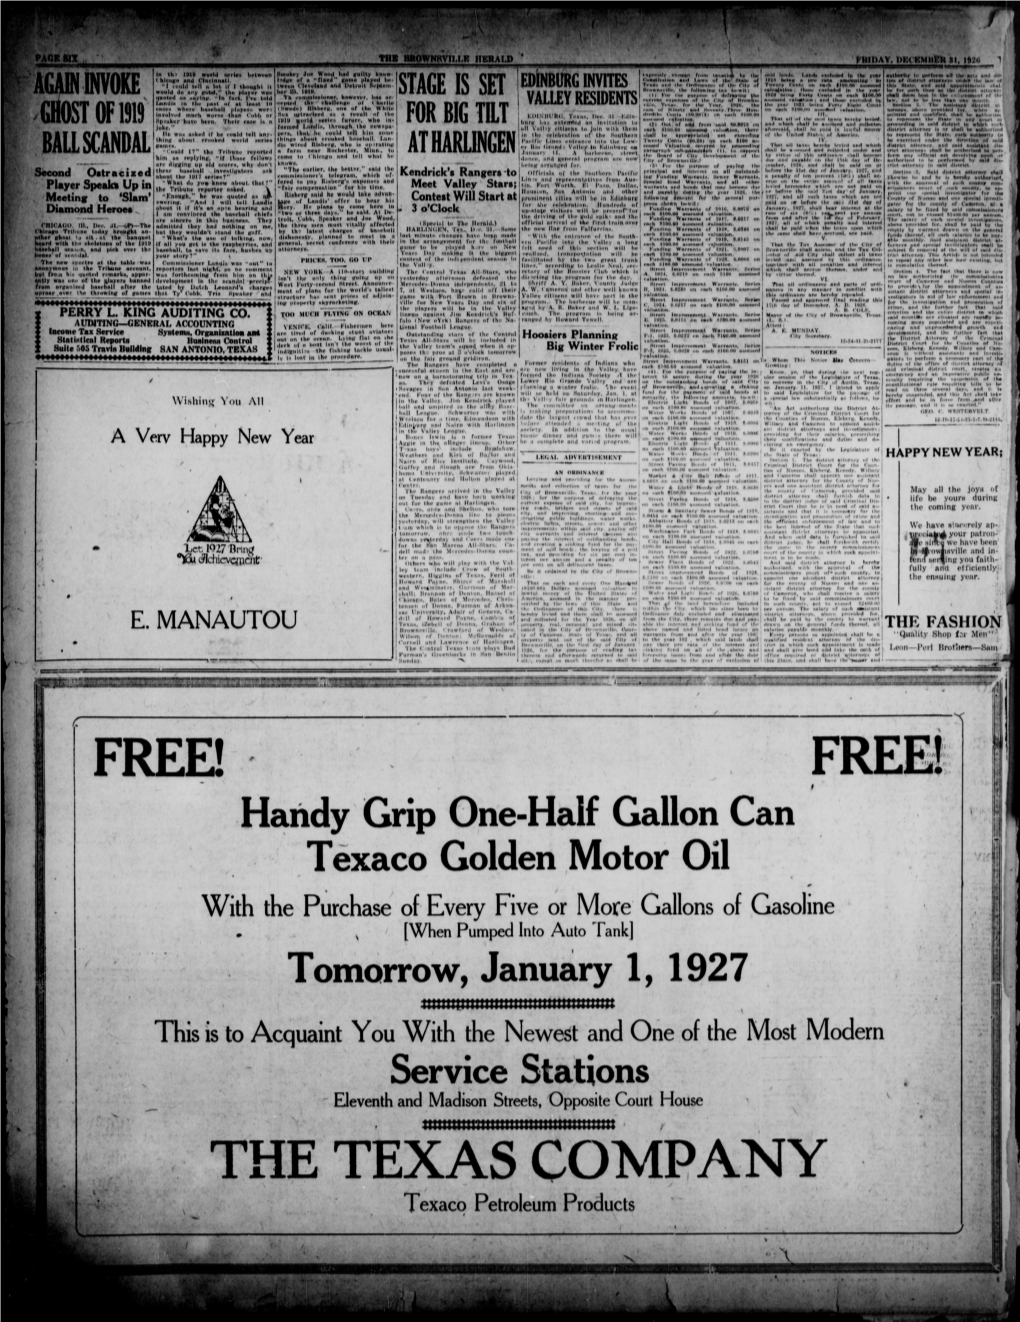 Tomorrow, January 1, 1927 Tttttttmtmttmtfttiifif Tmtmttt